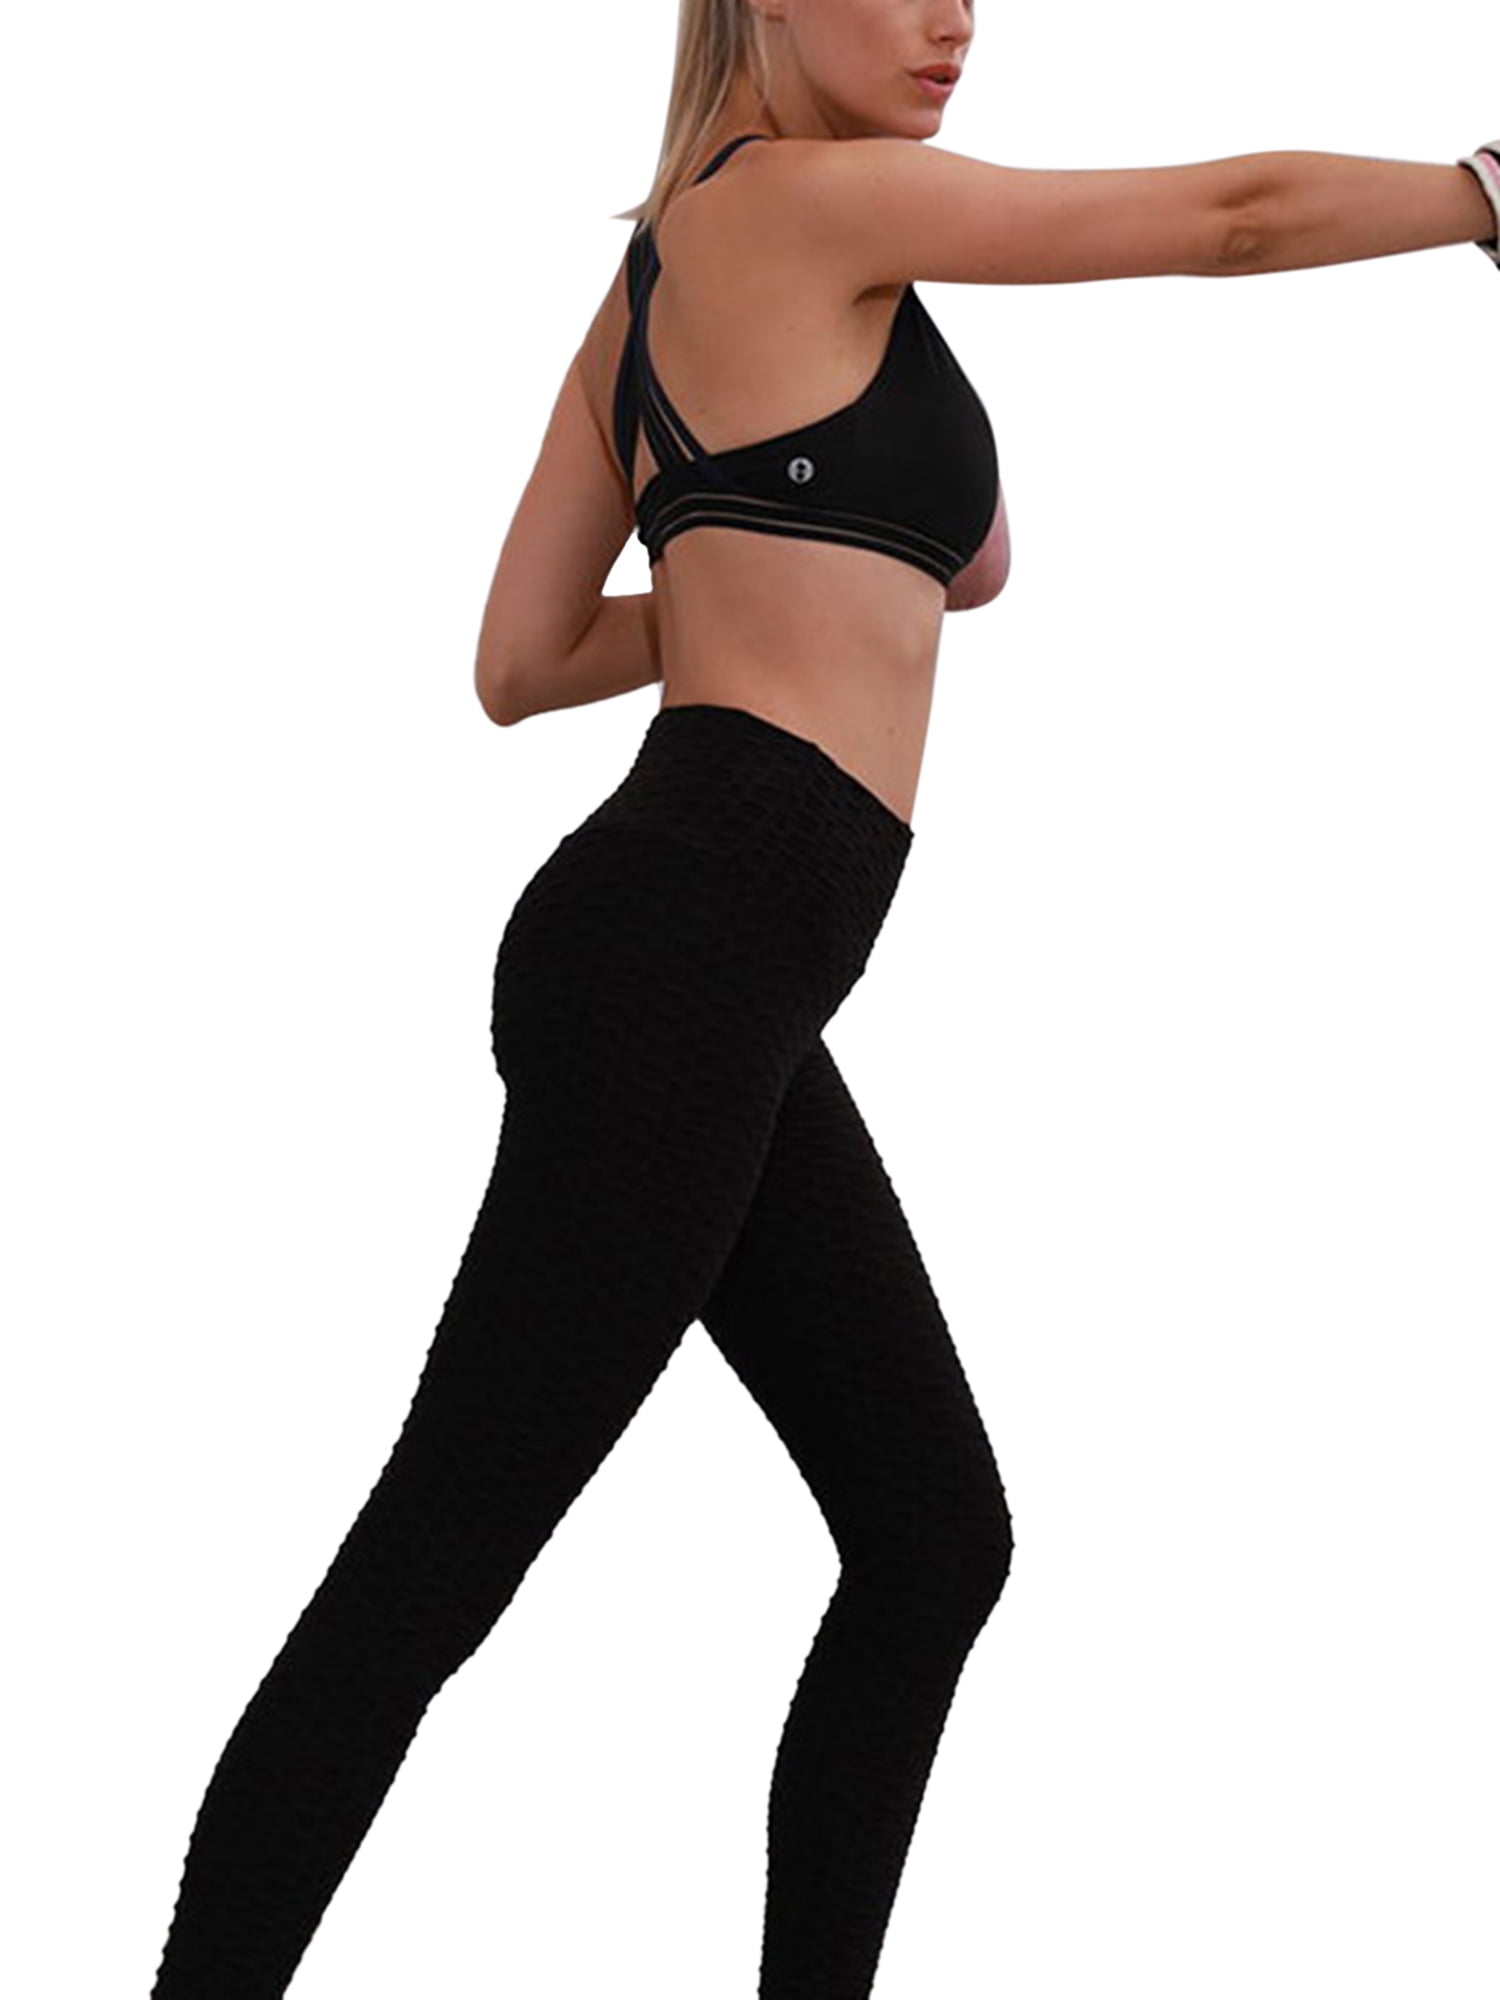 Femmes Leggings Anti-cellulite Yoga Banane Butt Lift SPORTS Gym